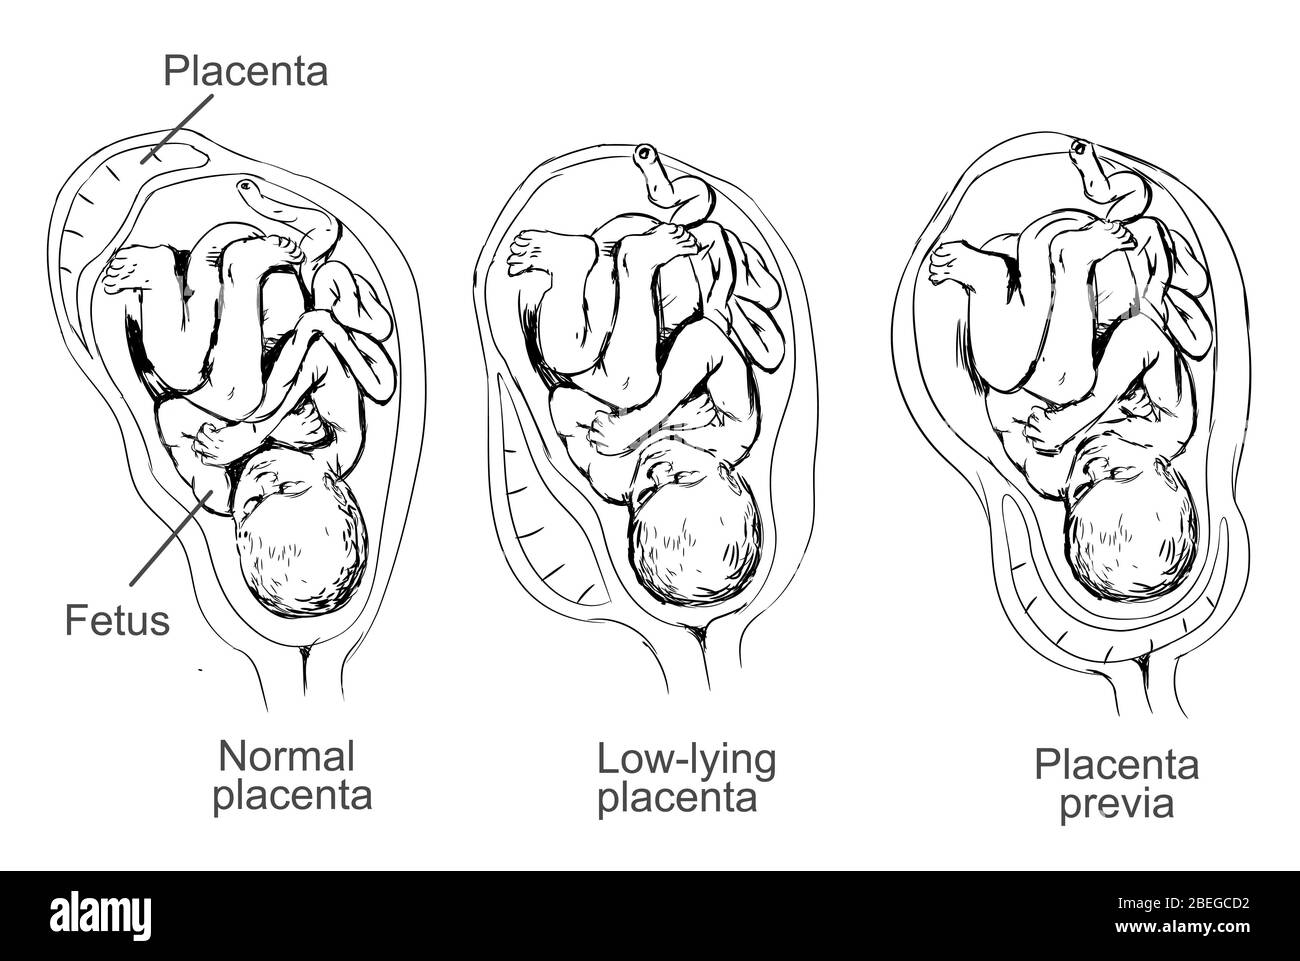 Illustration de la prévia placenta, condition dans laquelle le placenta se  trouve bas dans l'utérus et couvre le col de l'utérus, causant des  complications de grossesse Photo Stock - Alamy